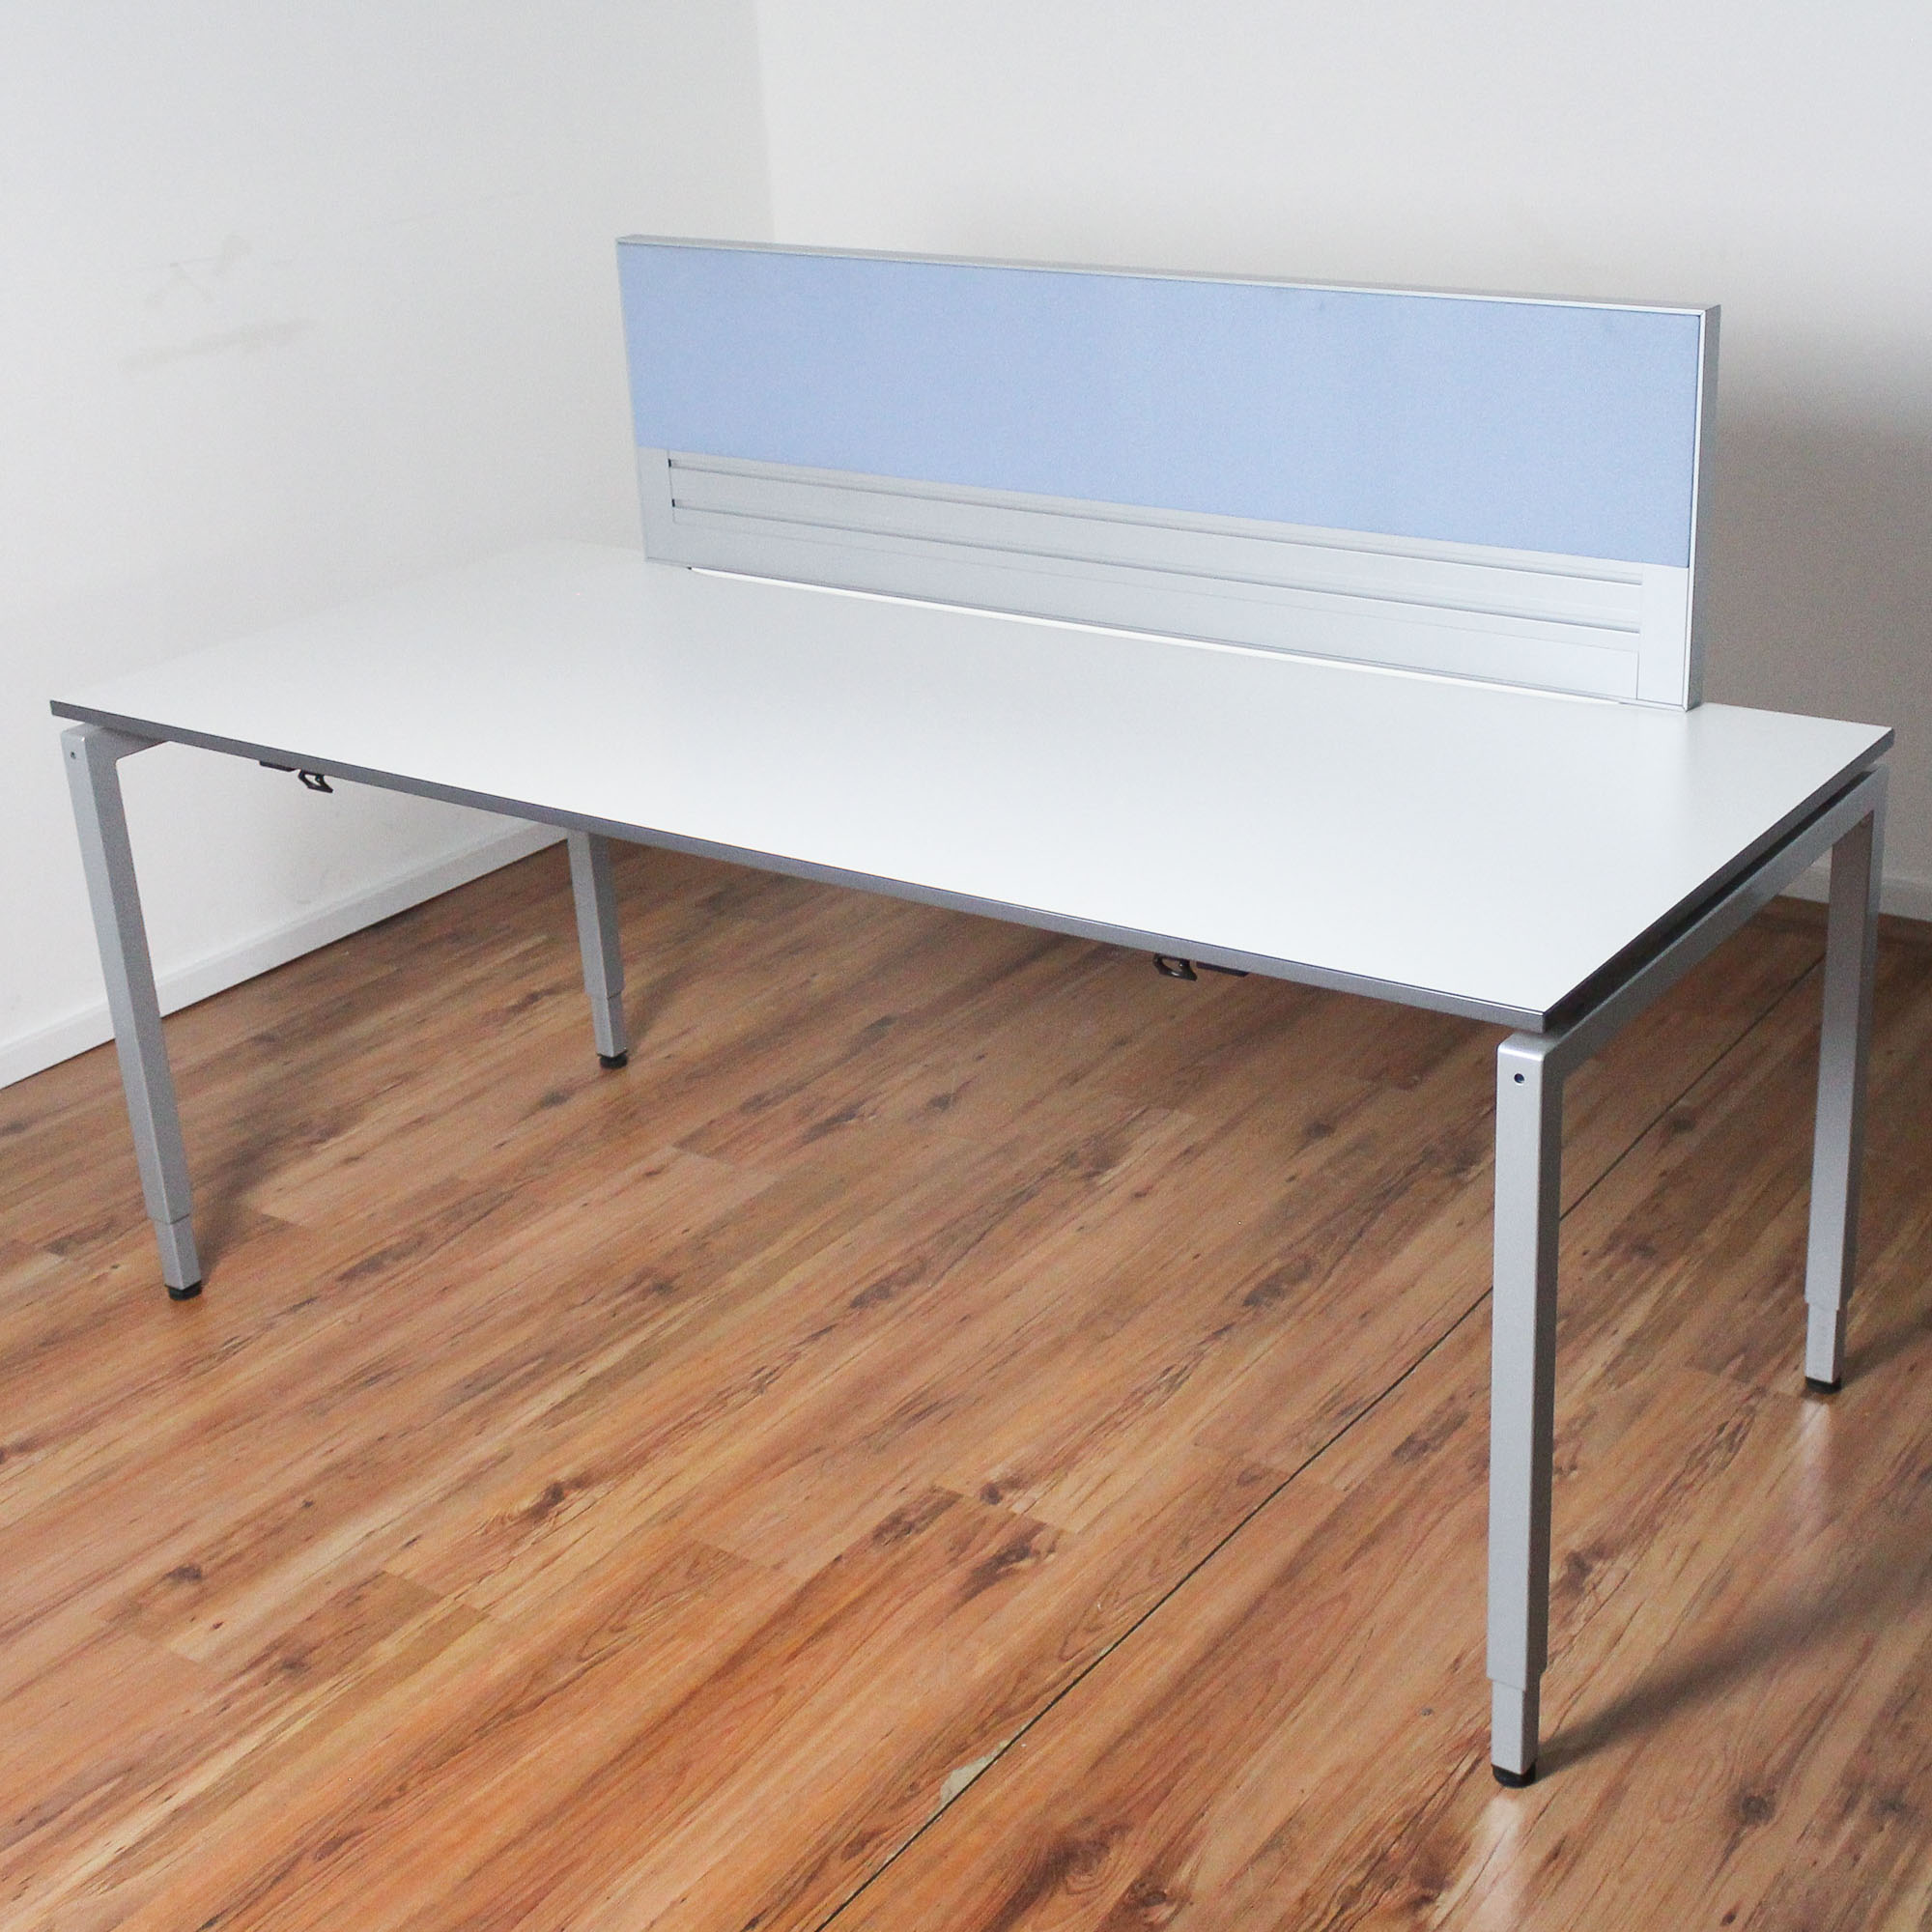 VS Schreibtisch - 180x80 cm - Platte weiß - Gestell silber - mit Trennwand